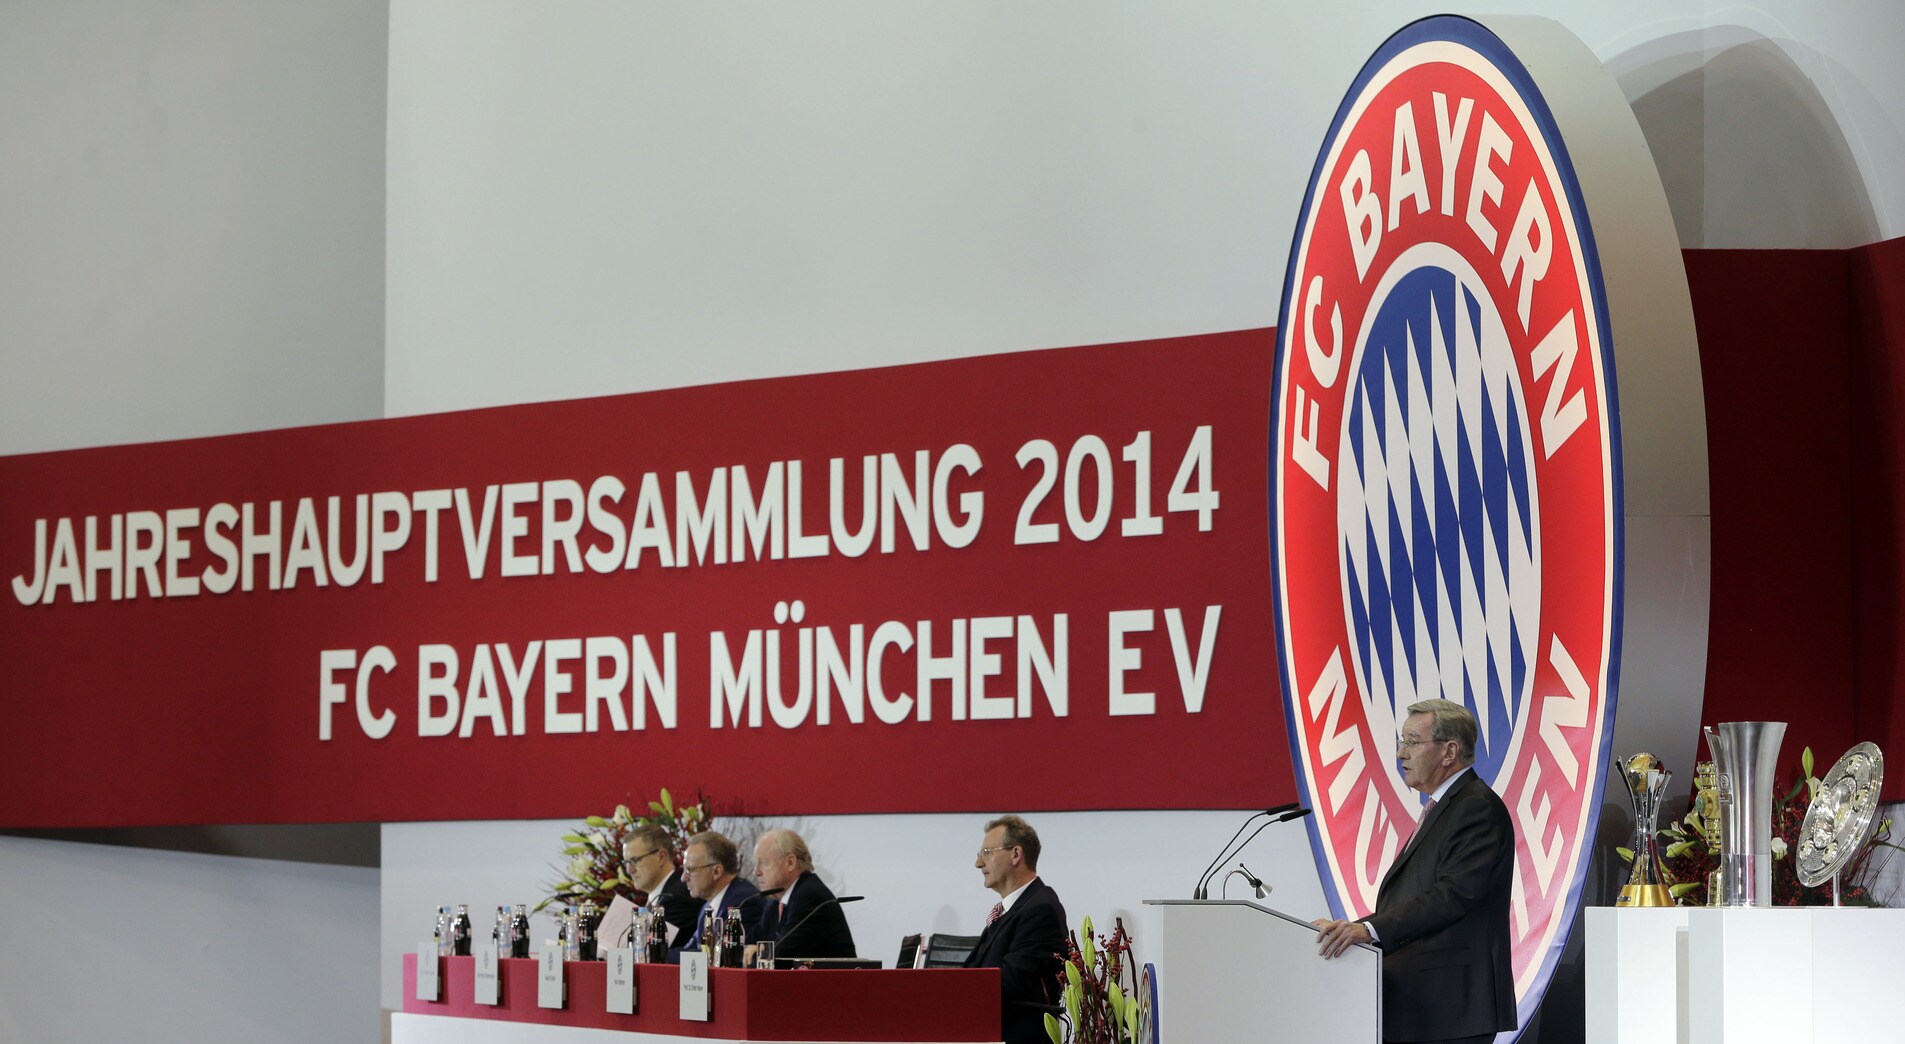 Bayern München grootste club ter wereld